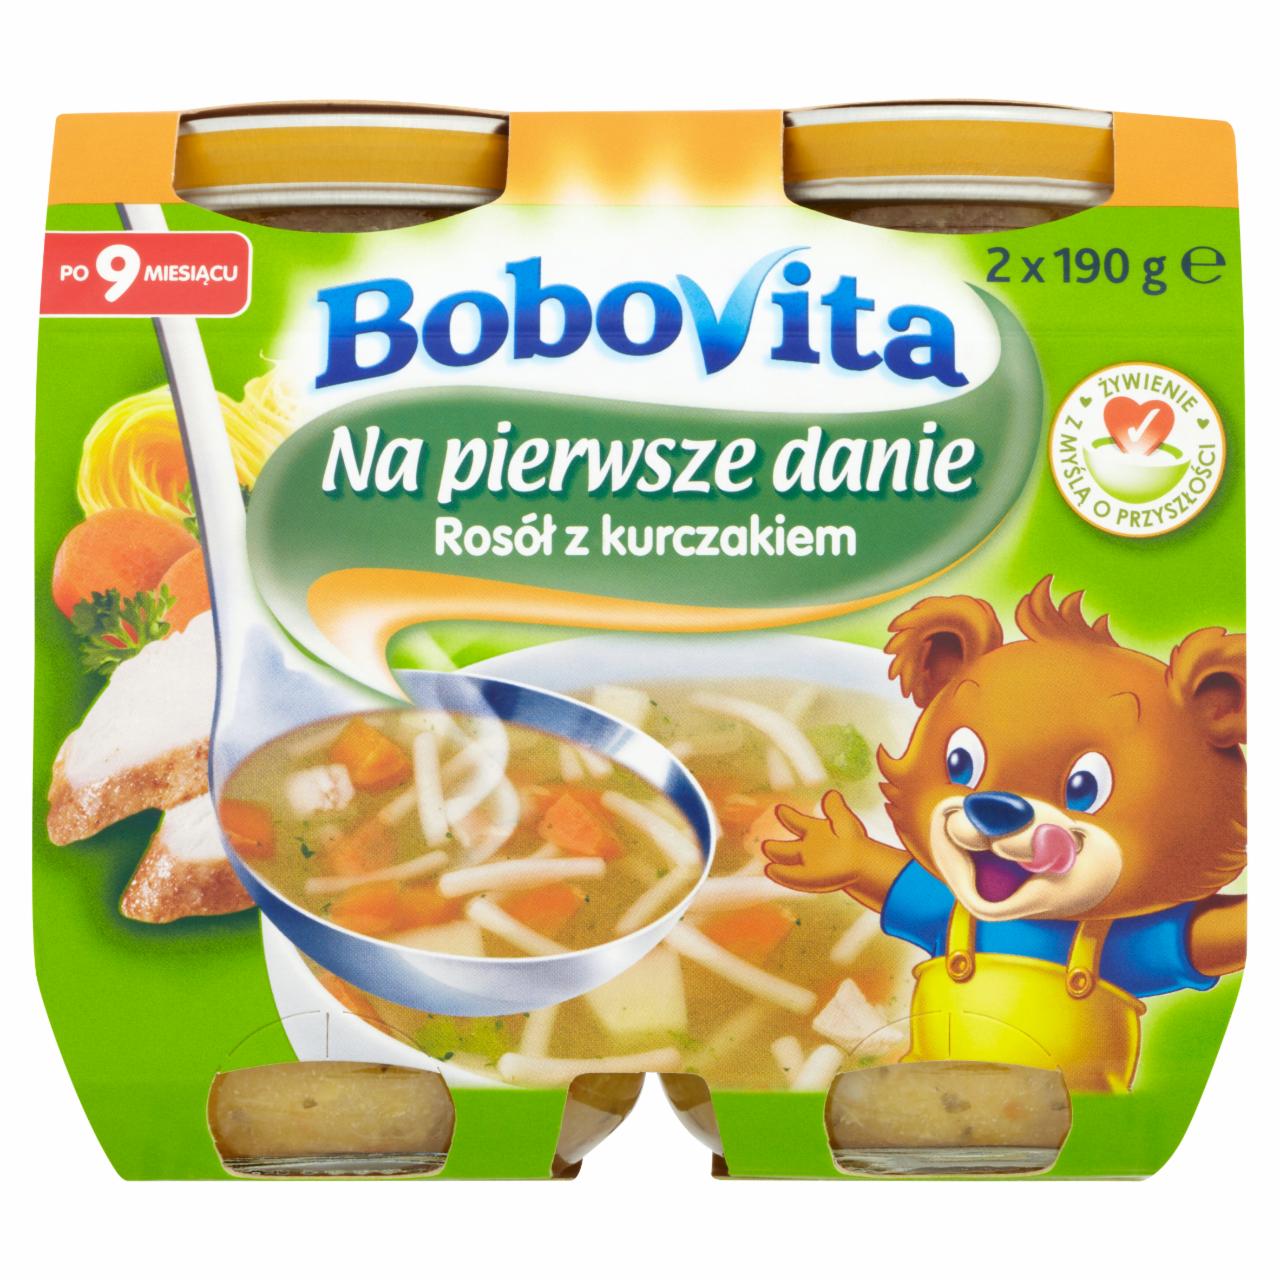 Zdjęcia - BoboVita Na pierwsze danie Rosół z kurczakiem po 9 miesiącu 2 x 190 g